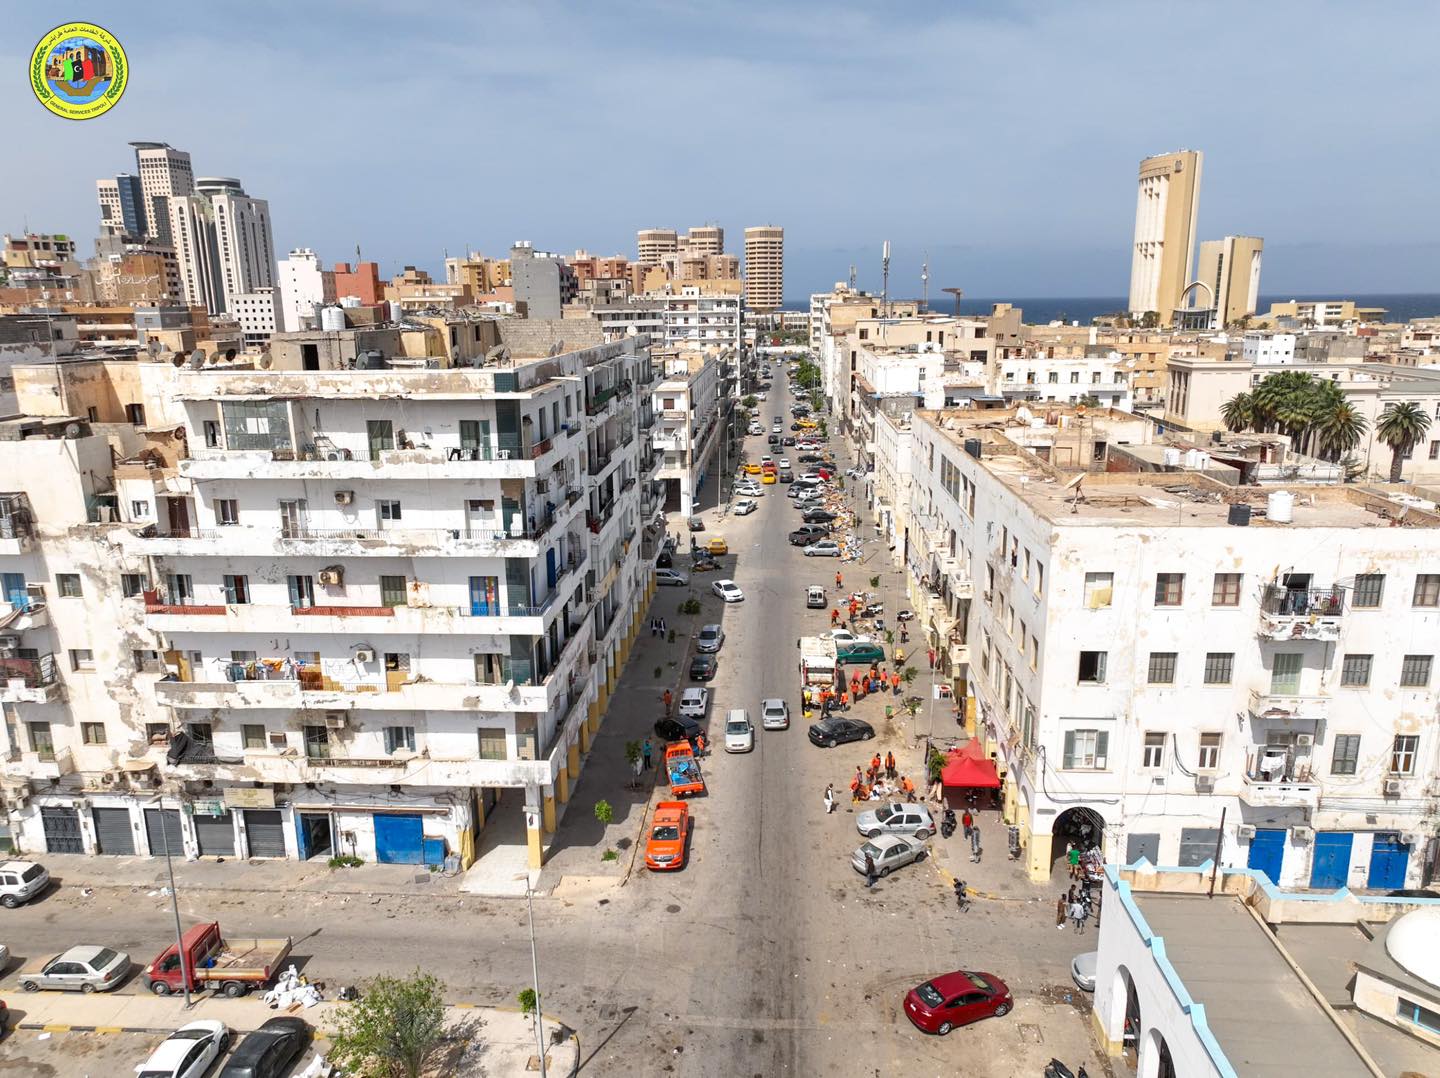  شركة الخدمات العامة طرابلس تواصل  أعمال التنظيف وجمع القمامة وكنس الاتربة من الاسواق الشعبية داخل مدينة طرابلس .